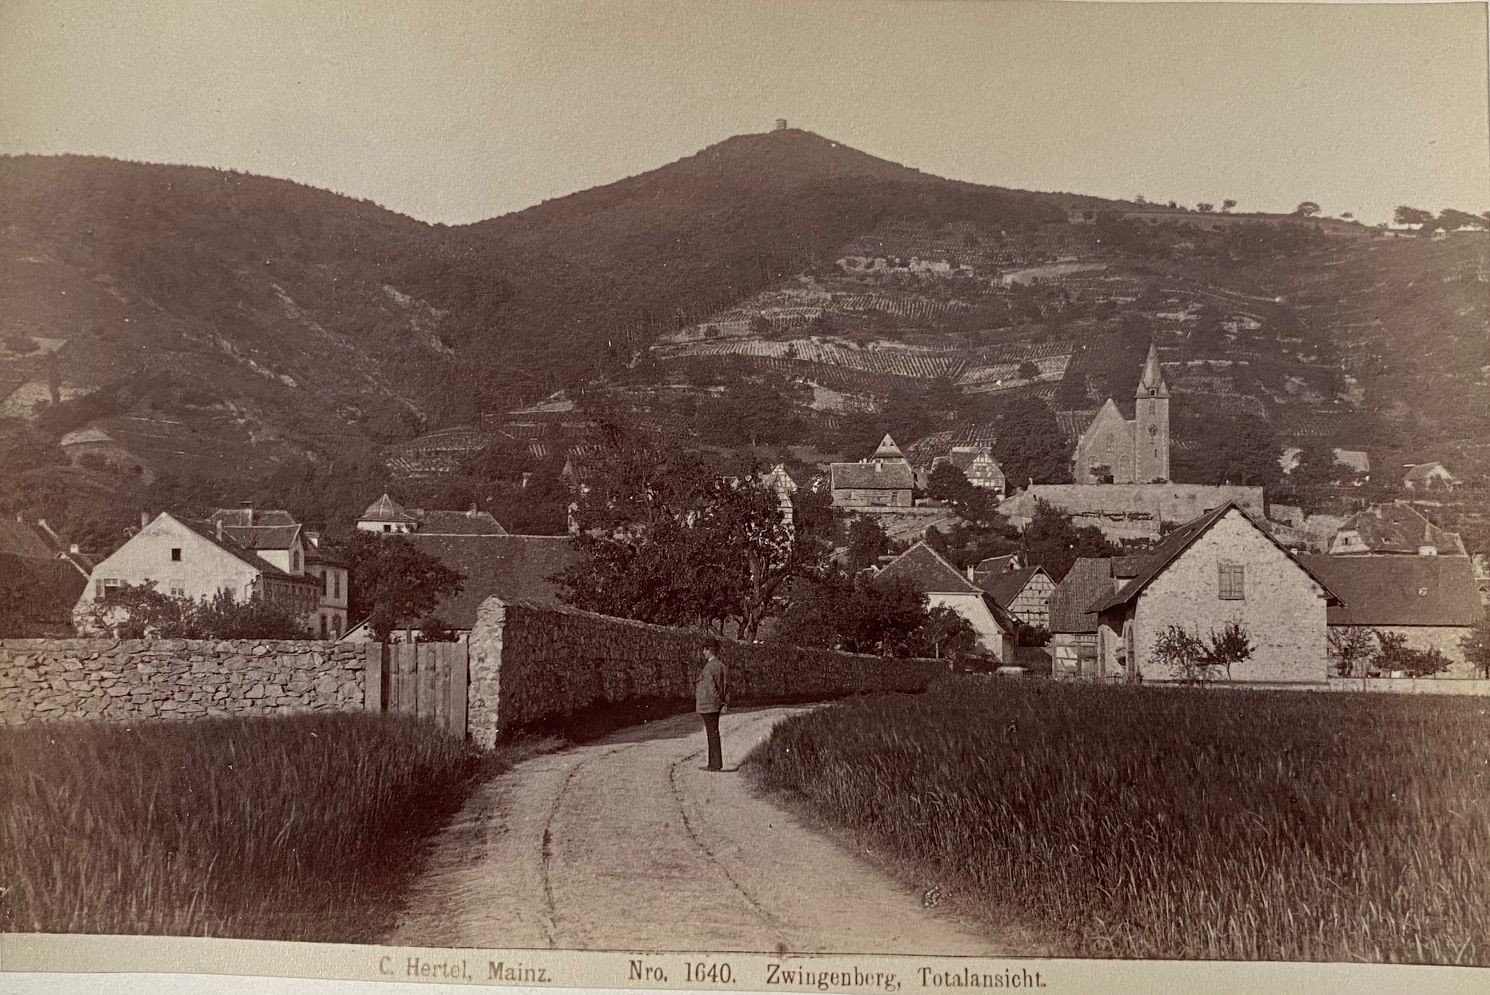 Fotografie, Carl Hertel No. 1640, Zwingenberg, Totalansicht, ca. 1885 (Taunus-Rhein-Main - Regionalgeschichtliche Sammlung Dr. Stefan Naas CC BY-NC-SA)